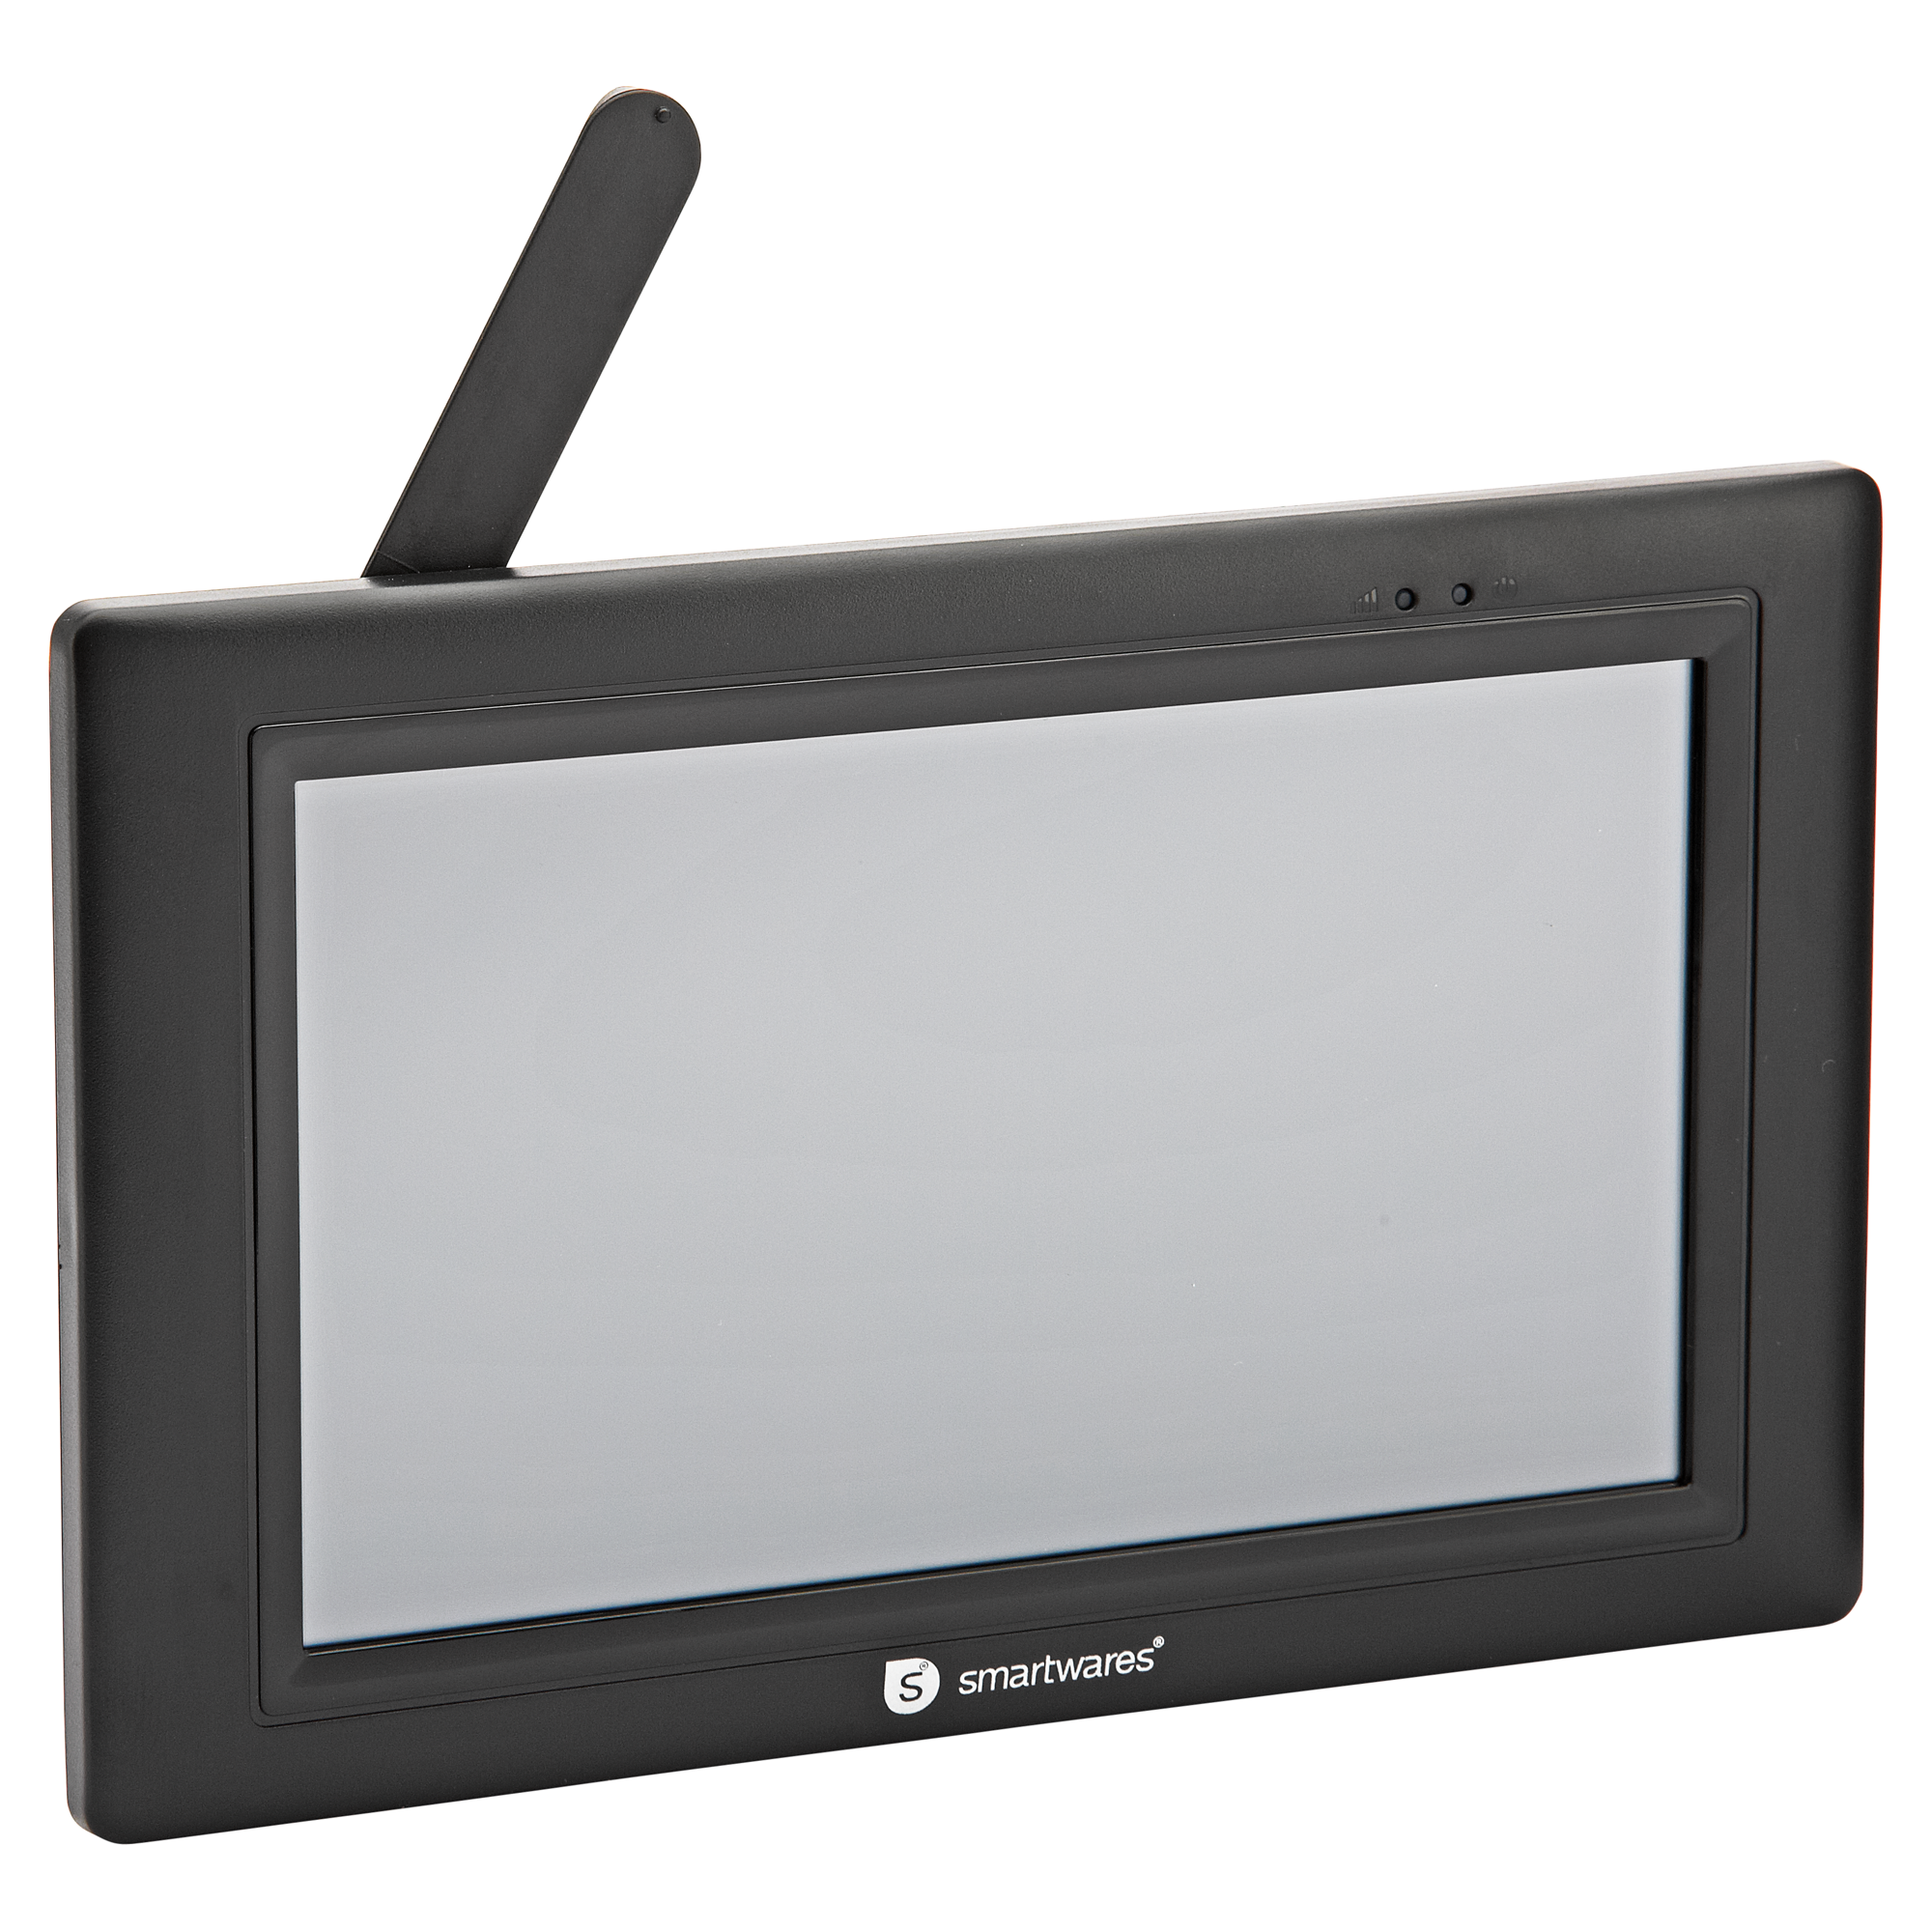 Digitales Echtzeit-Kamerasystem mit 7" Touchscreen + product picture